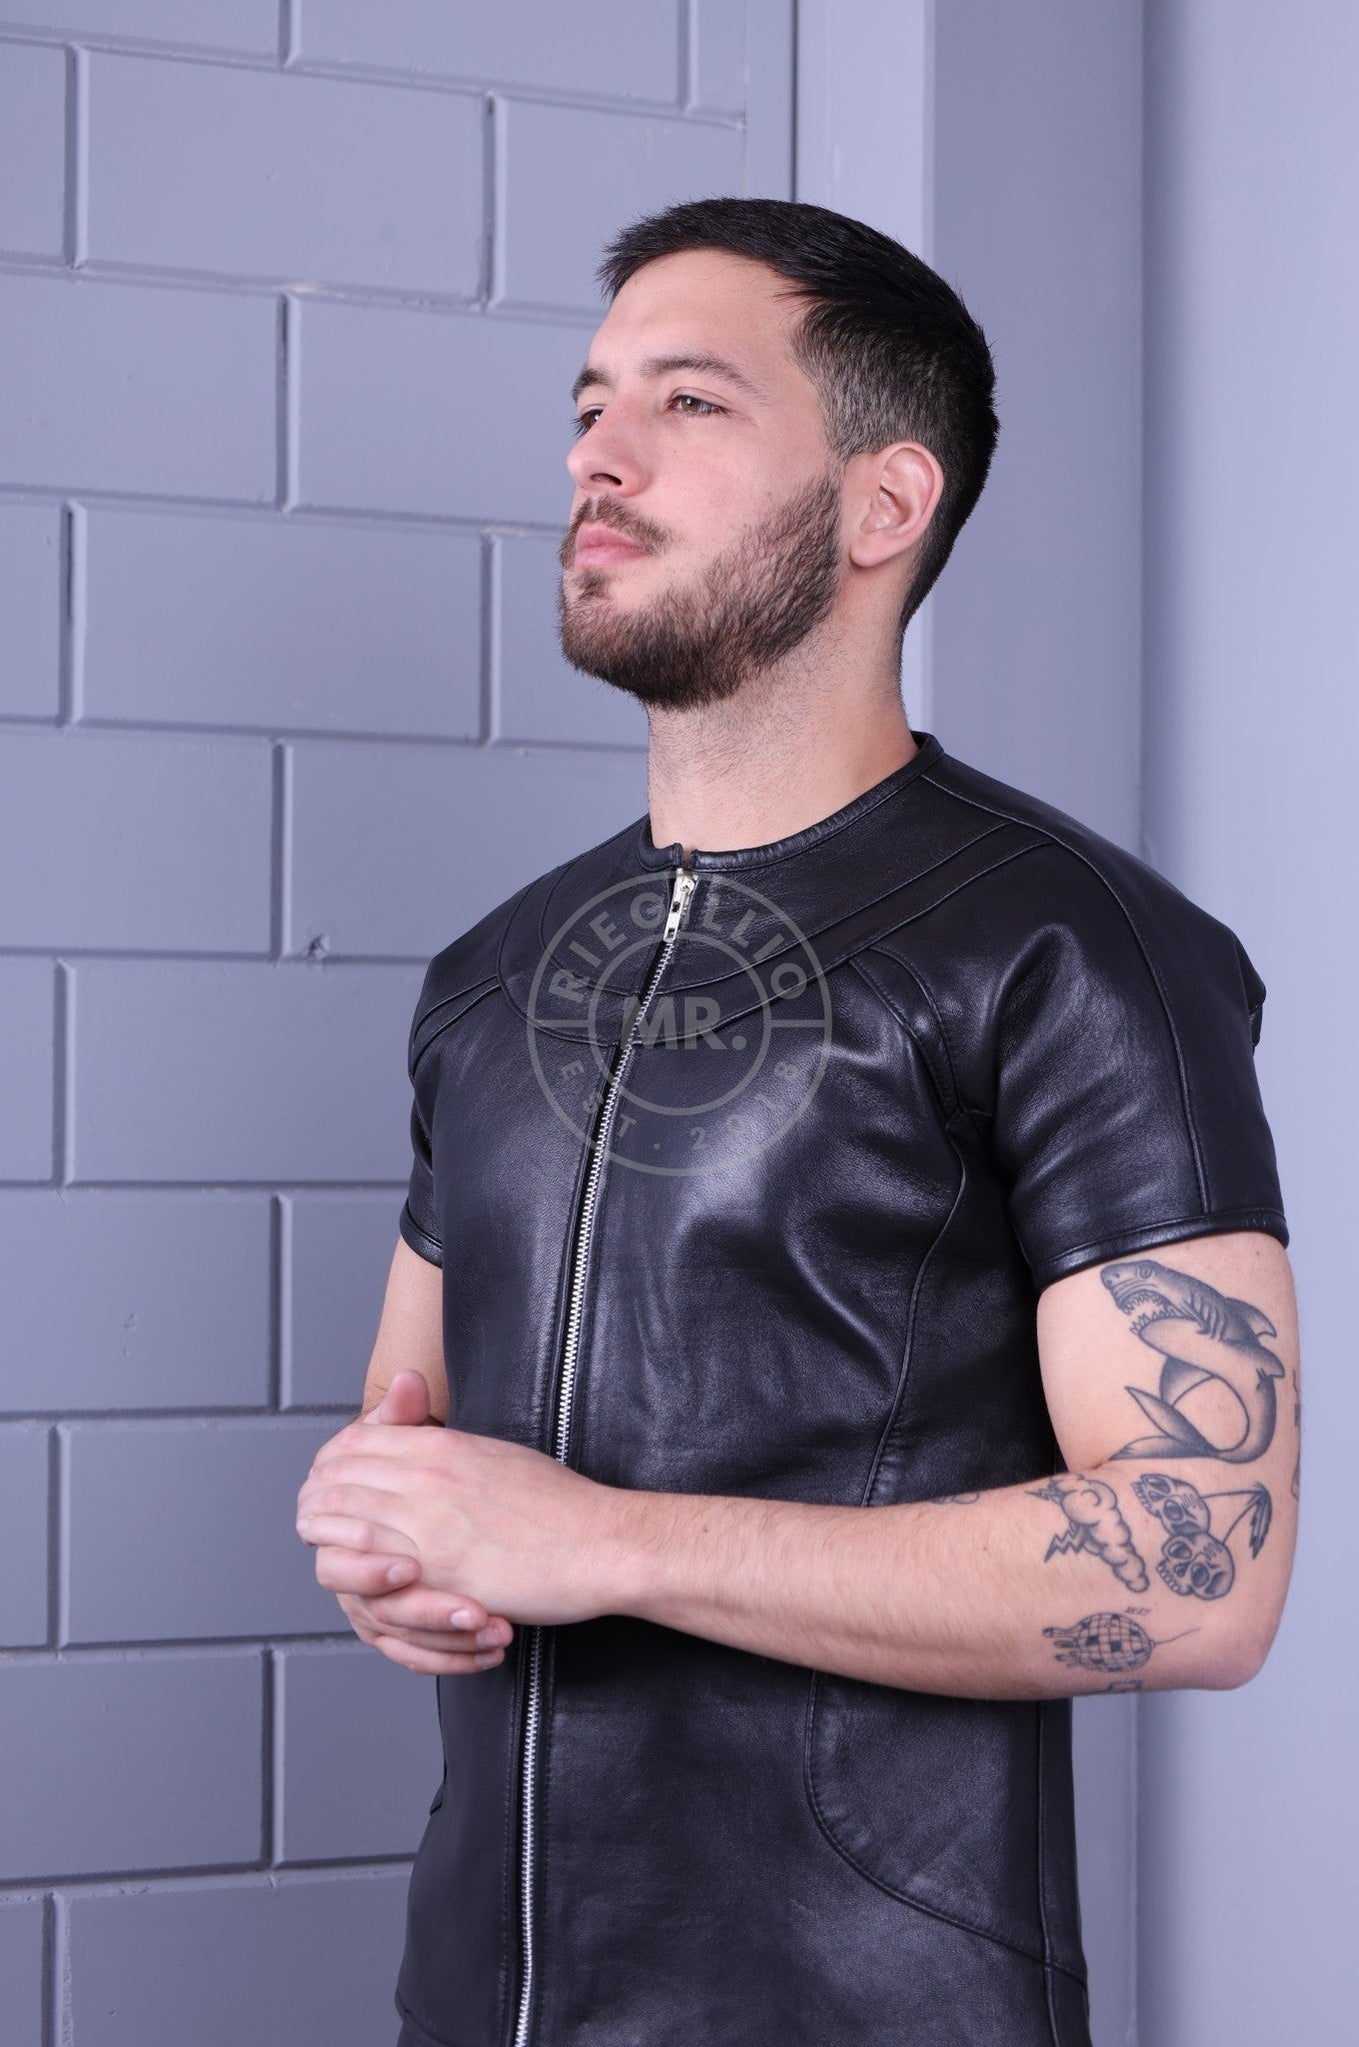 Leather Biker Shirt - Black at MR. Riegillio